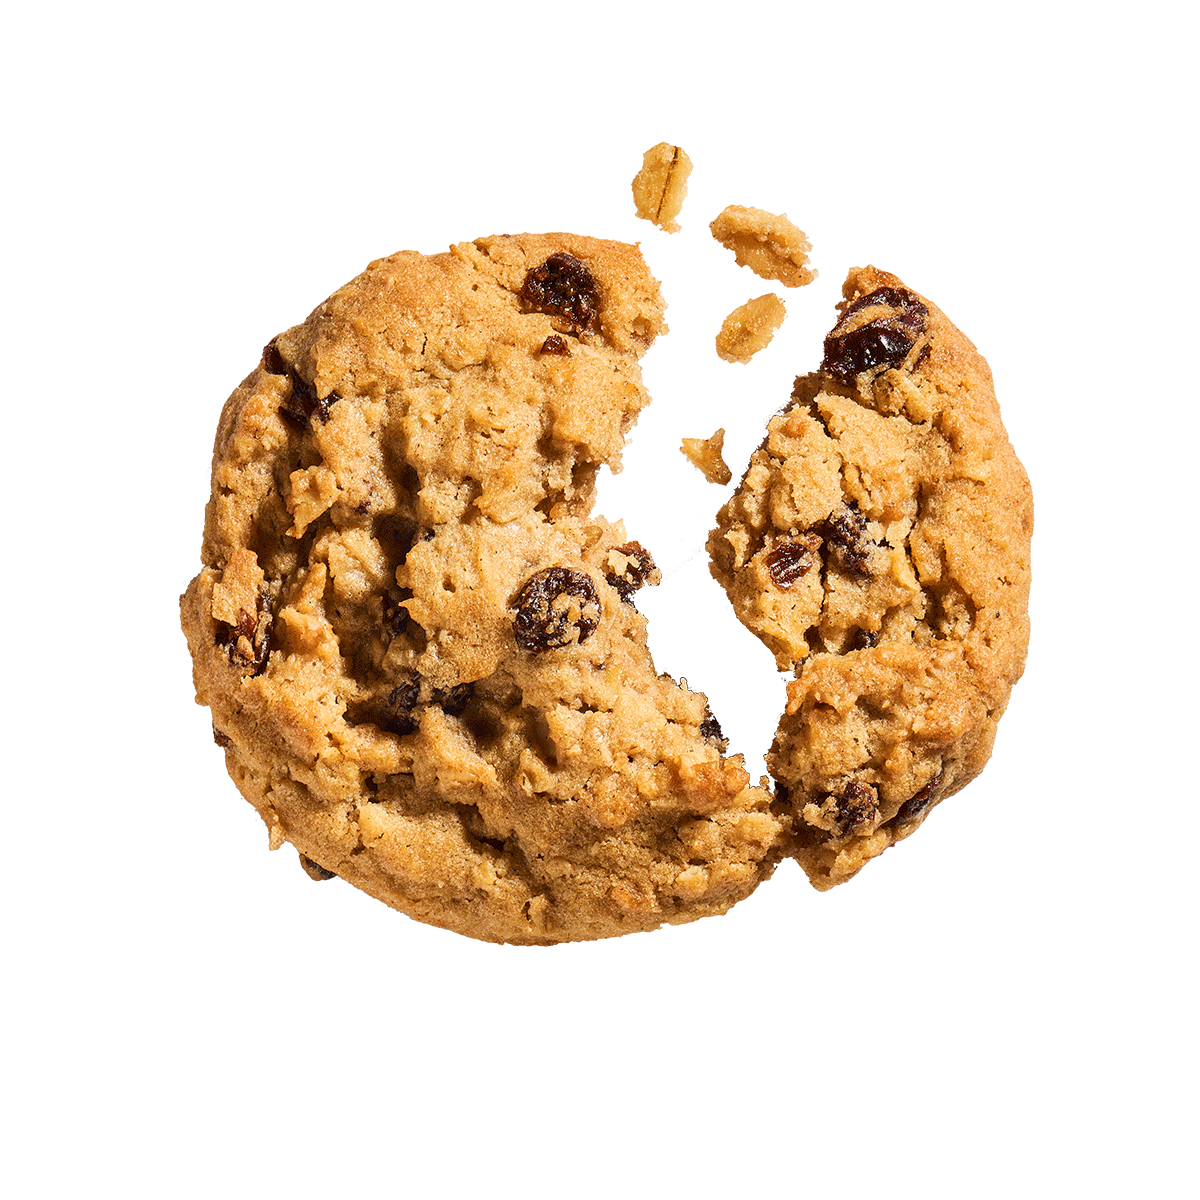 Oatmeal rasin cookie